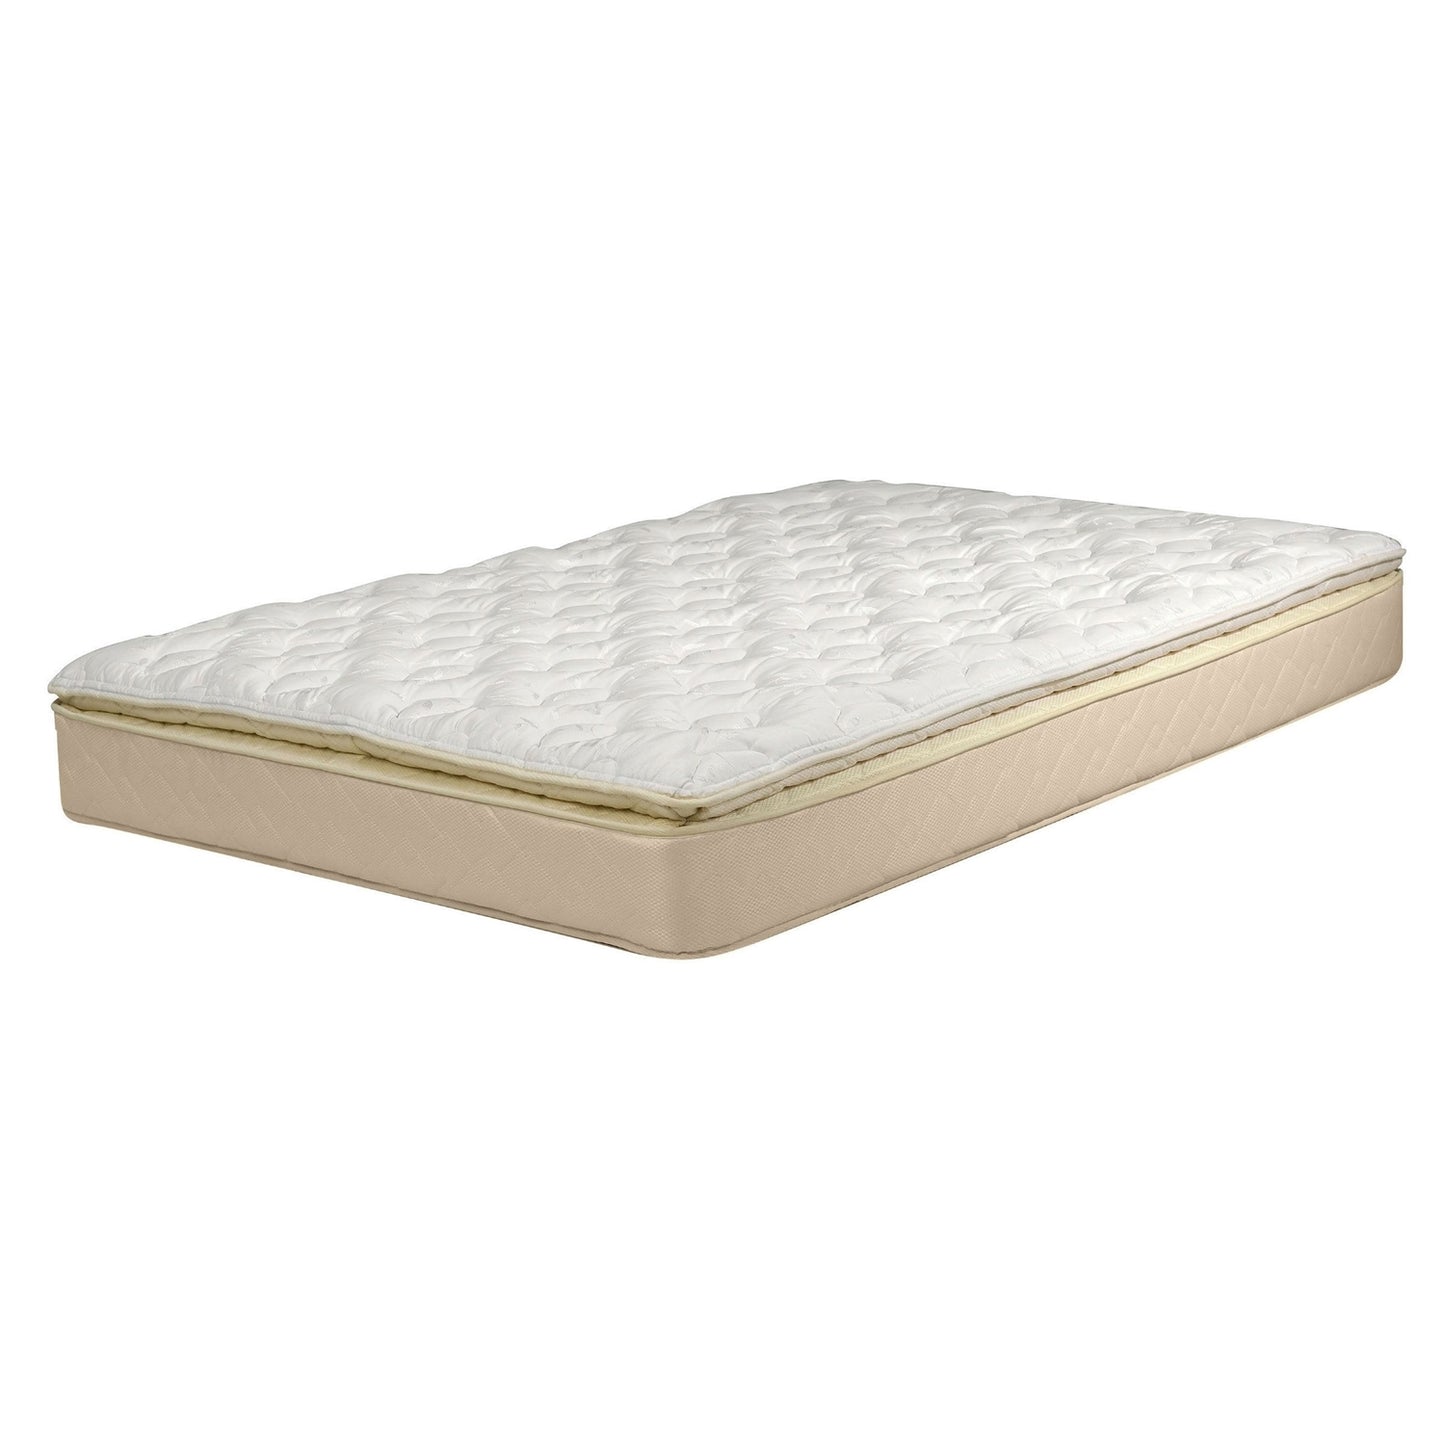 Queen size 10-inch Thick Pillow Top Innerspring Mattress